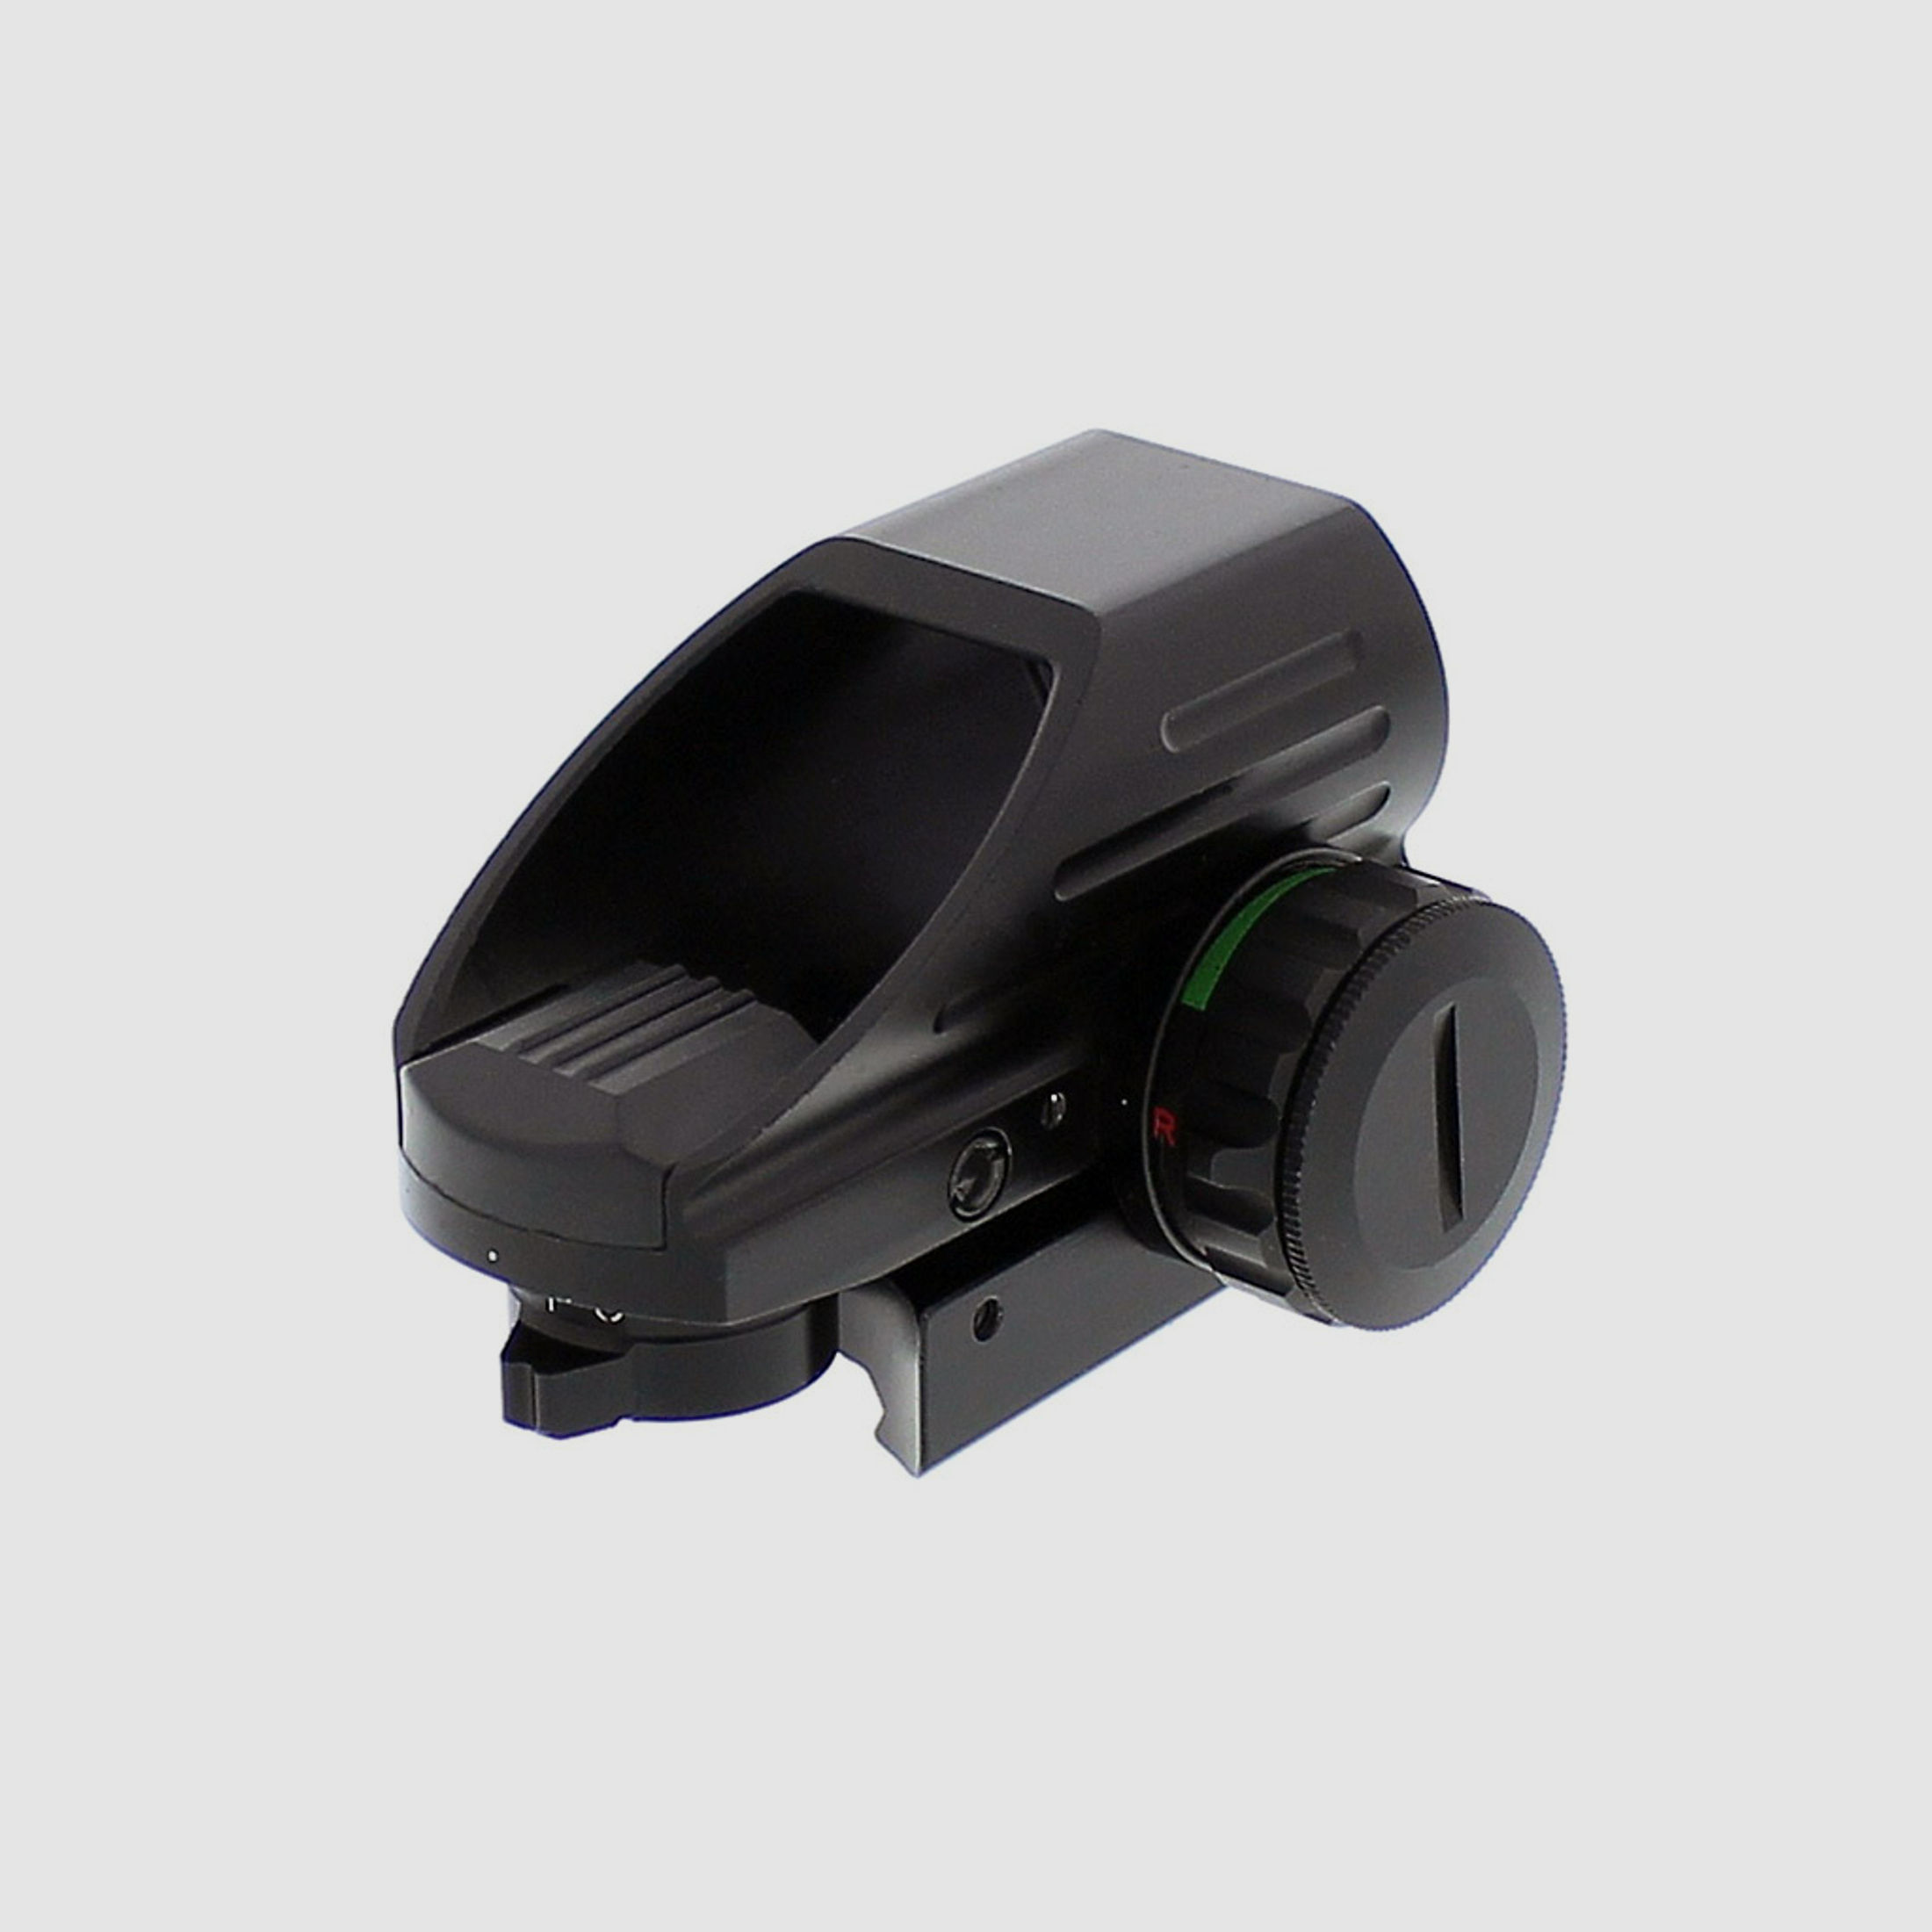 Leuchtpunktvisier Ares Arms Red Green Dot, 4 wĂ¤hlbare Absehen, stufenlose Helligkeitsregulierung, fĂĽr 11 mm Prismenschiene